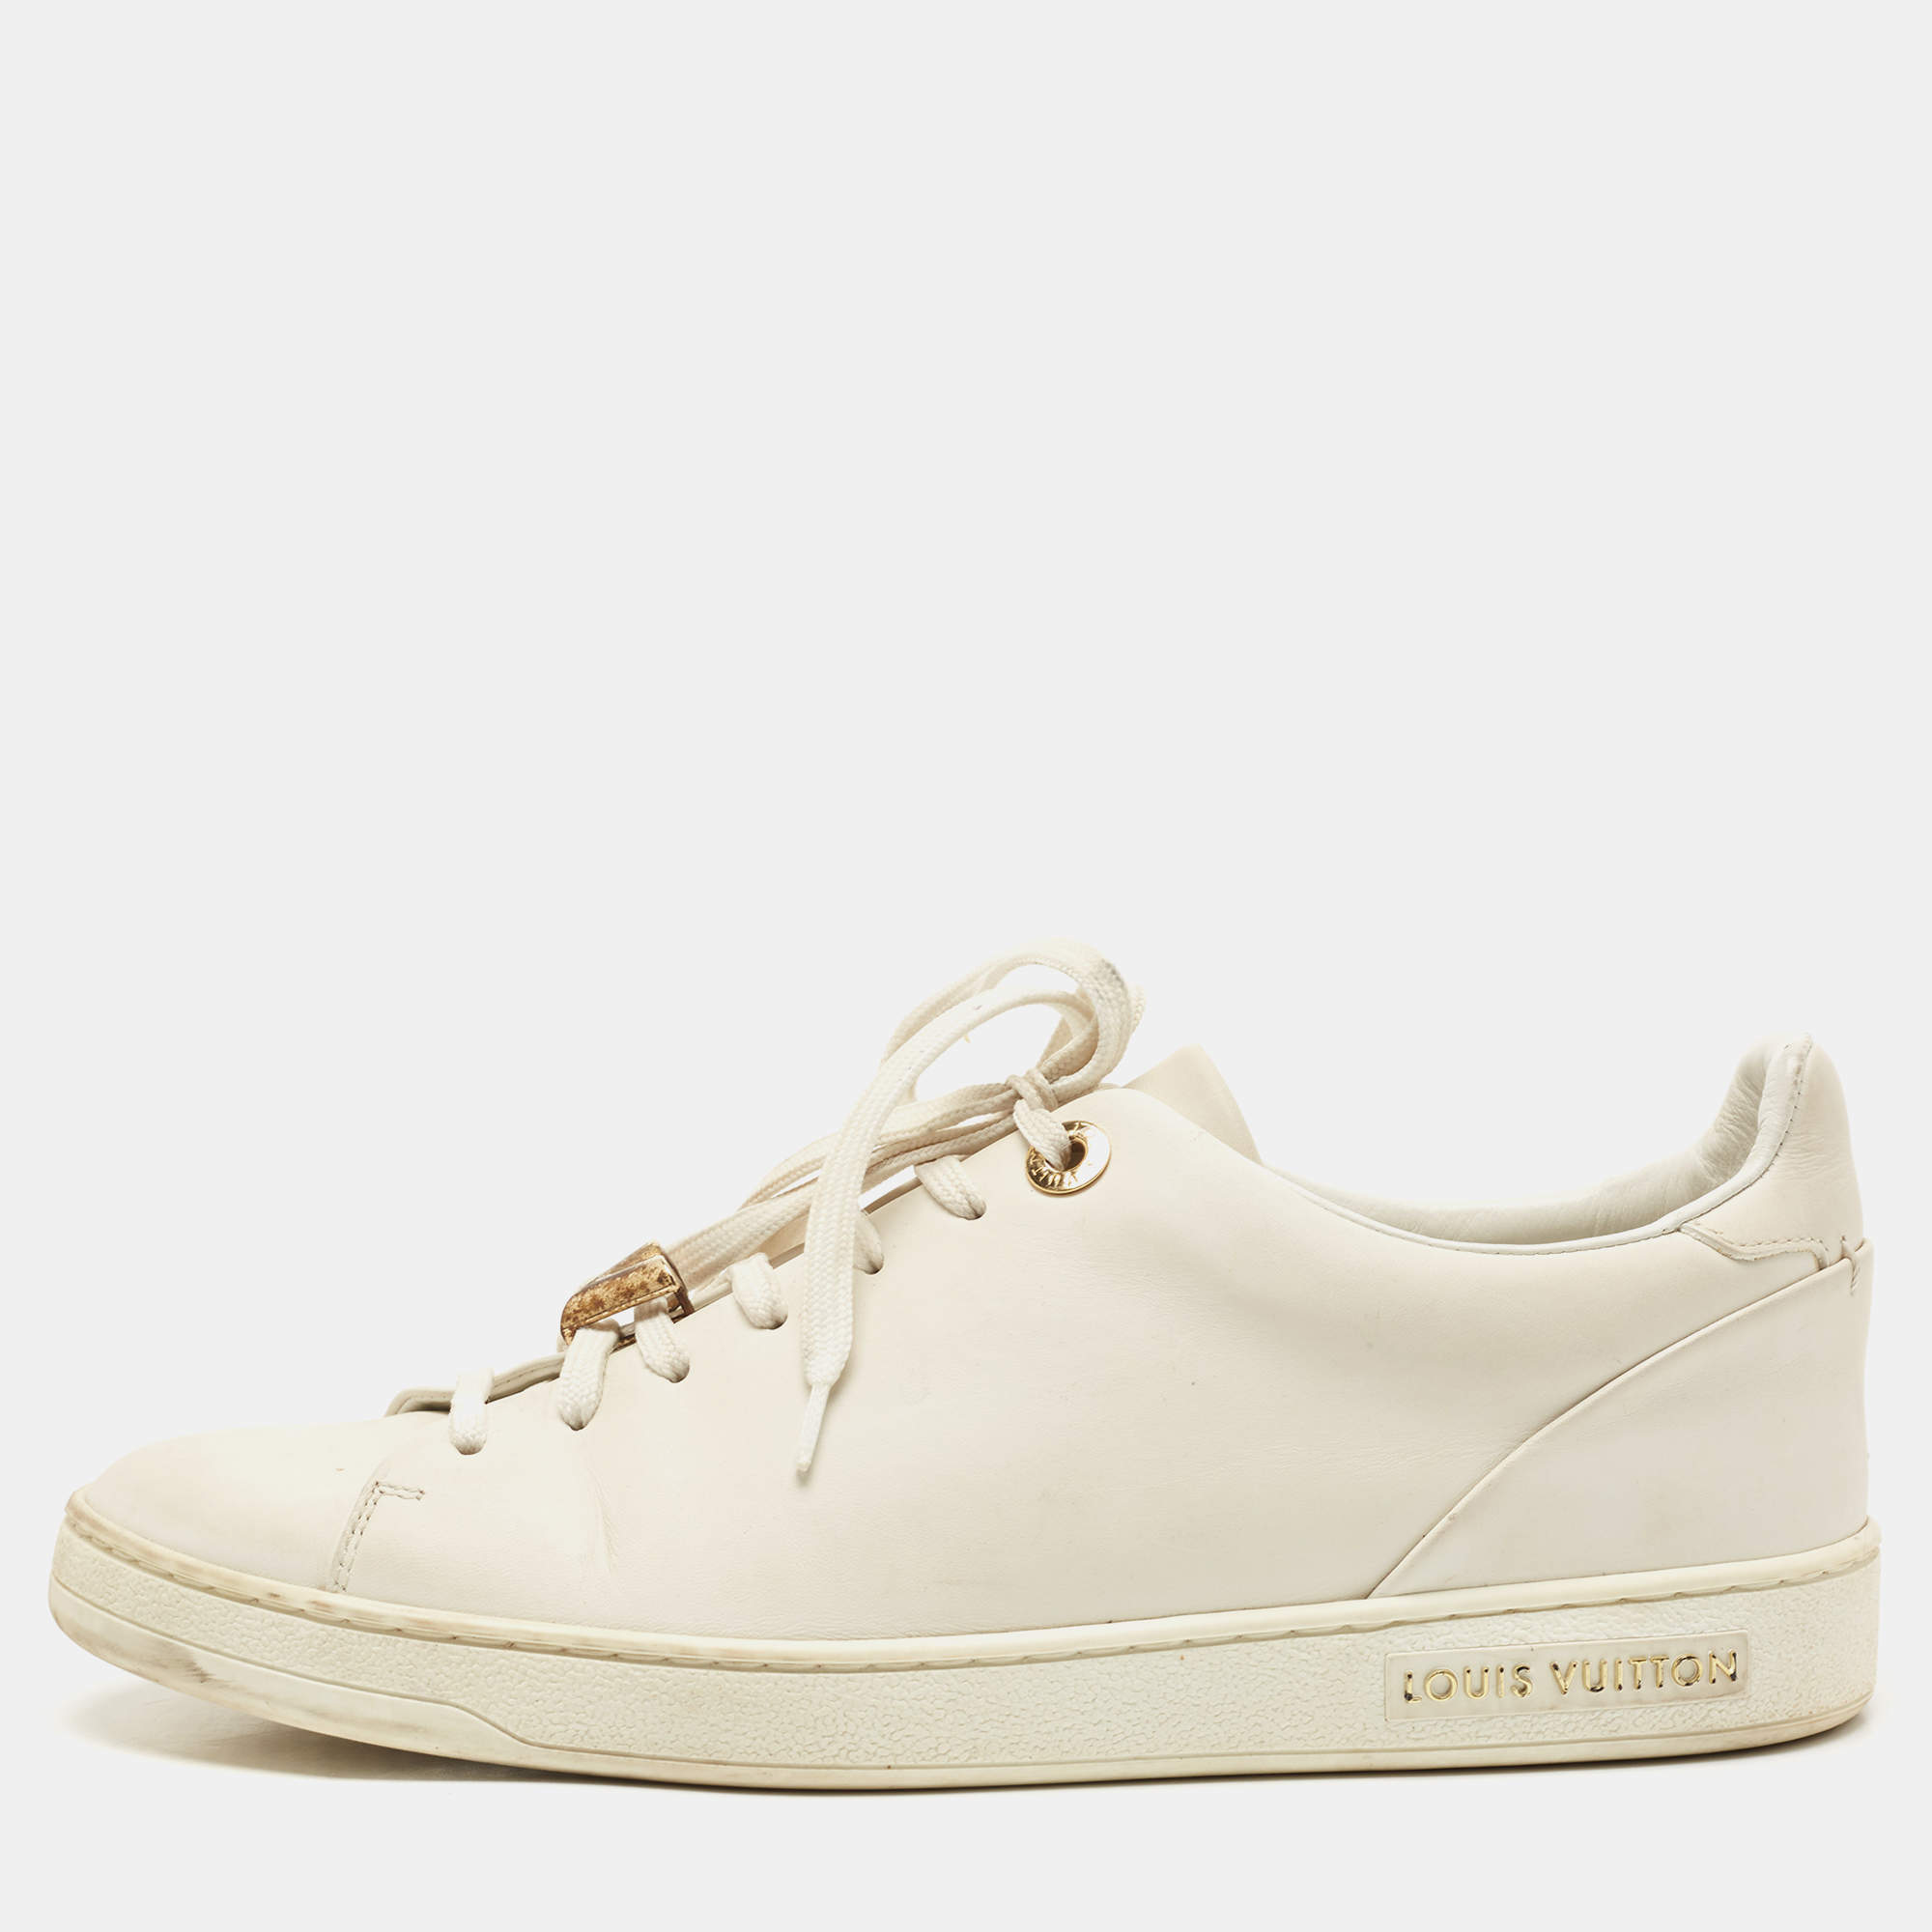 Louis Vuitton White Leather Frontrow Sneakers Size 38 Louis Vuitton